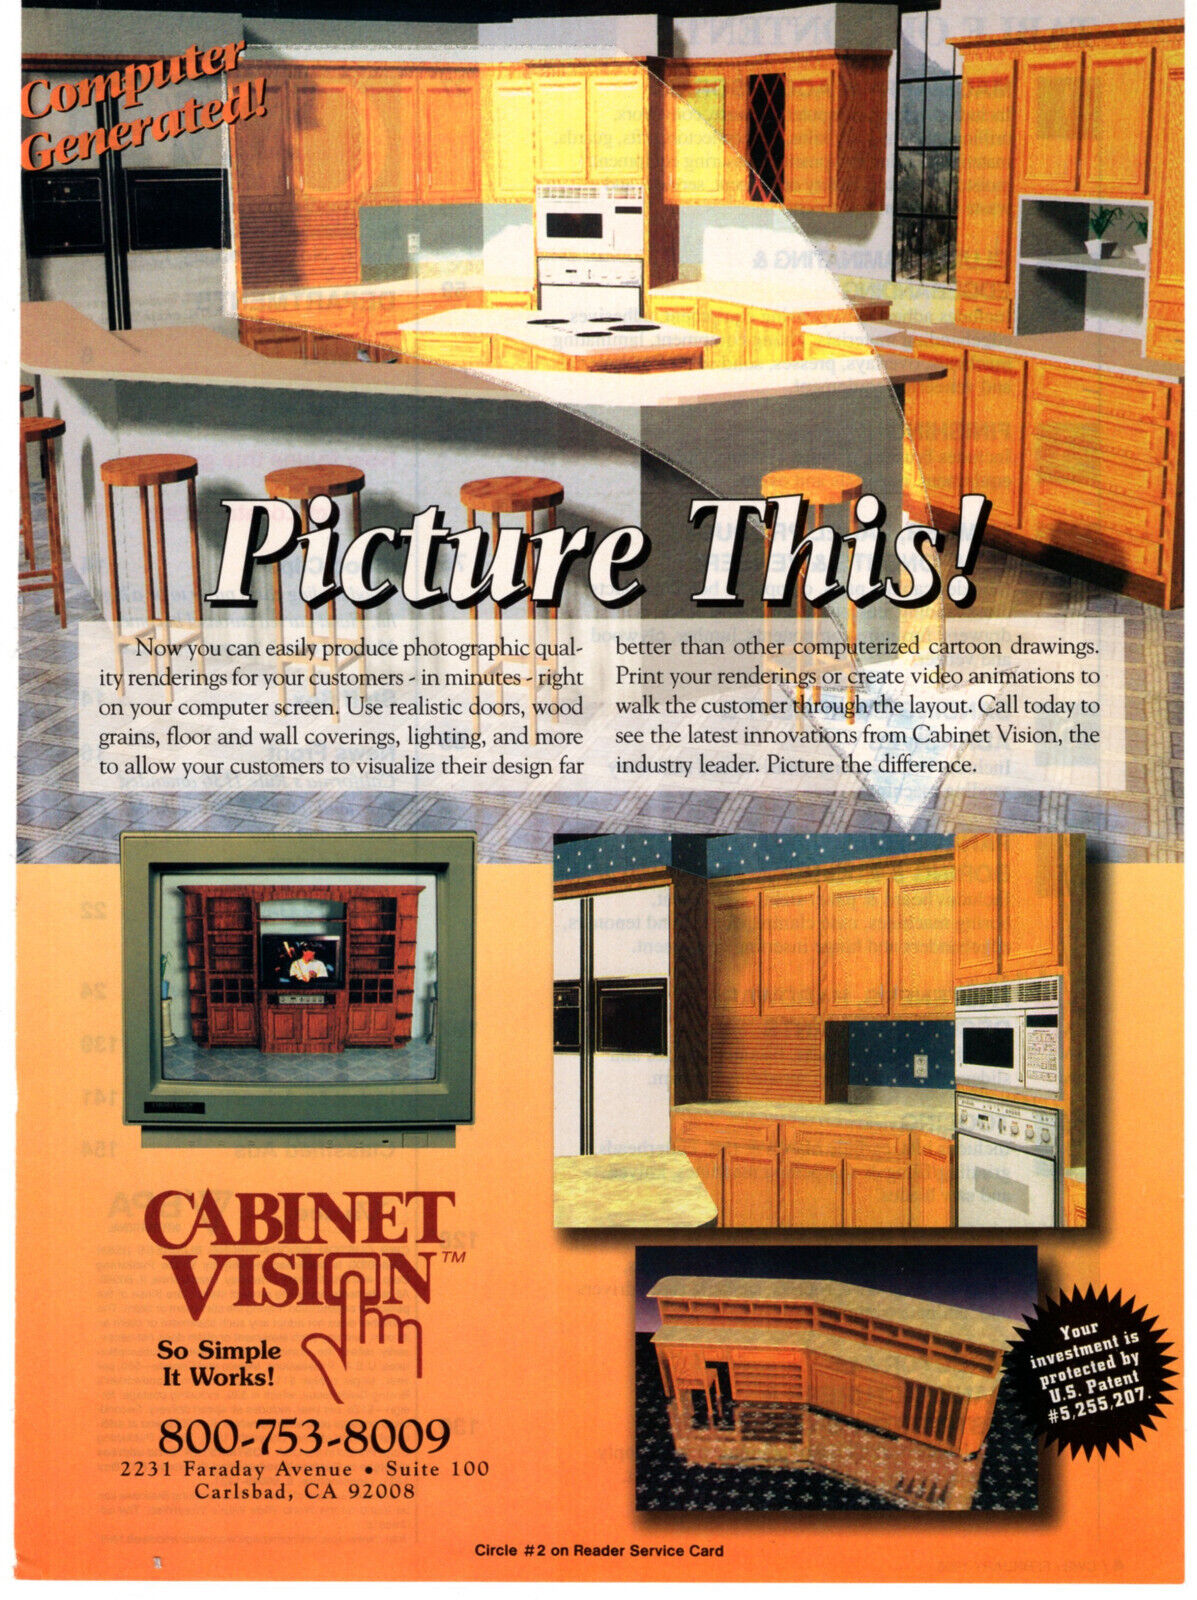 Cabinet Vision Design Software Computer Rendering 1996 Vintage Print Ad Original